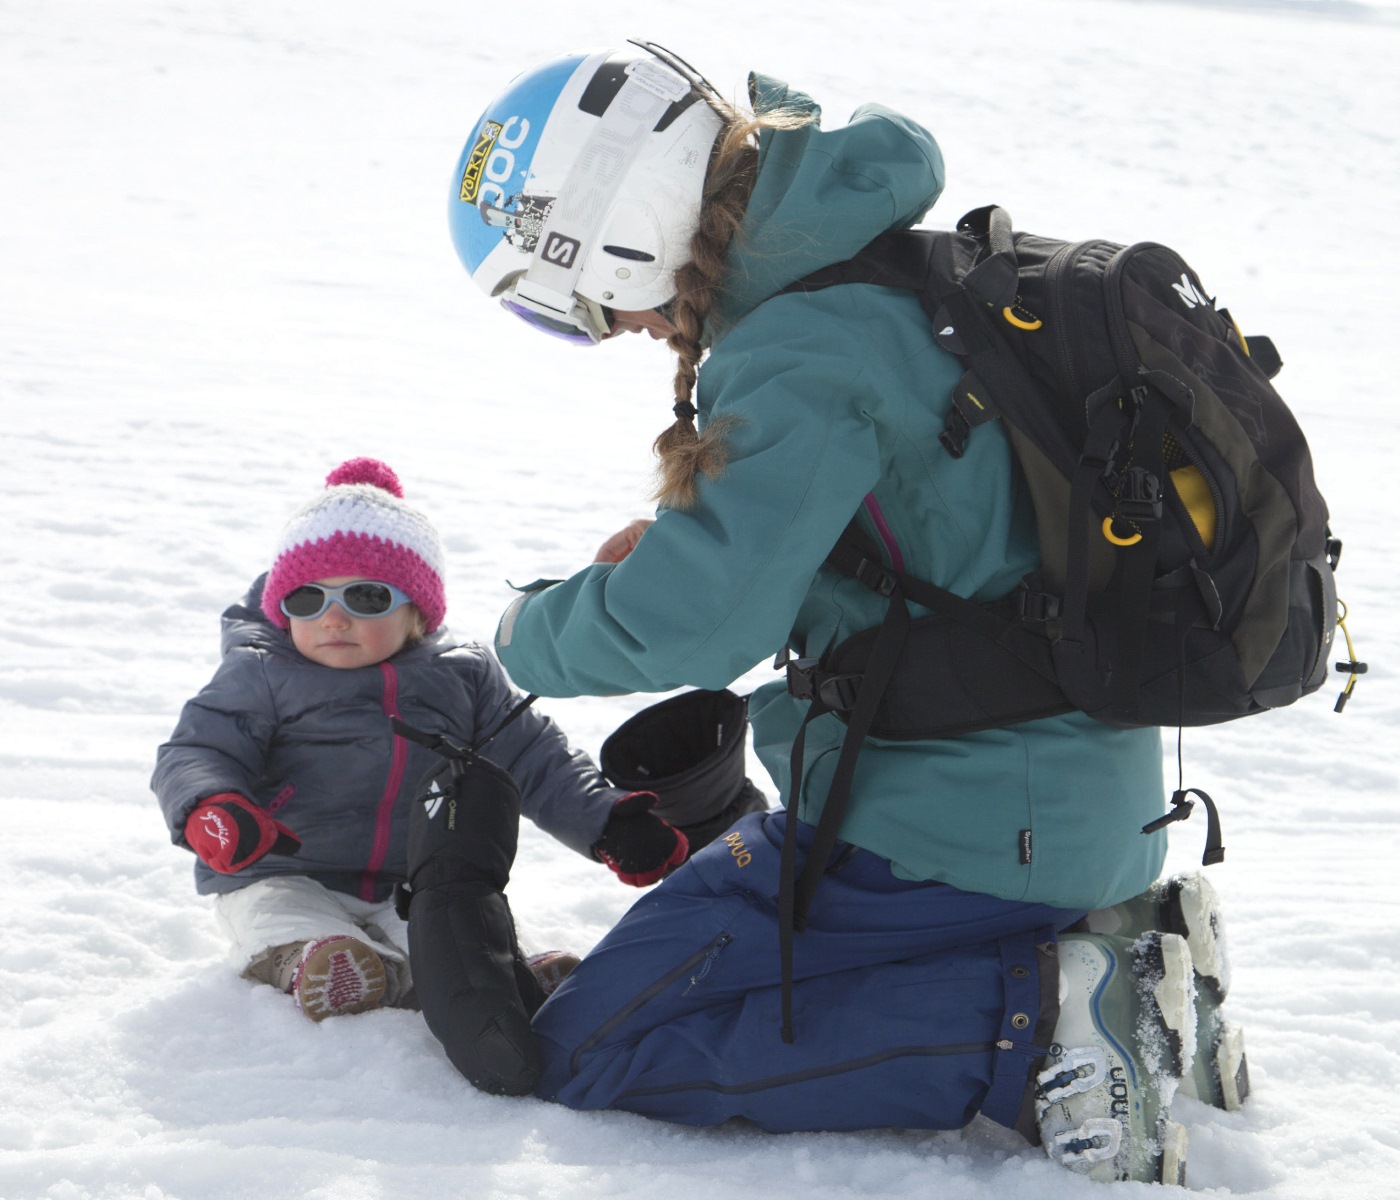 Un estilo de vida activo en invierno un niño pequeño con ropa abrigada de  invierno monta un gato de nieve para niños que es tirado por una cuerda